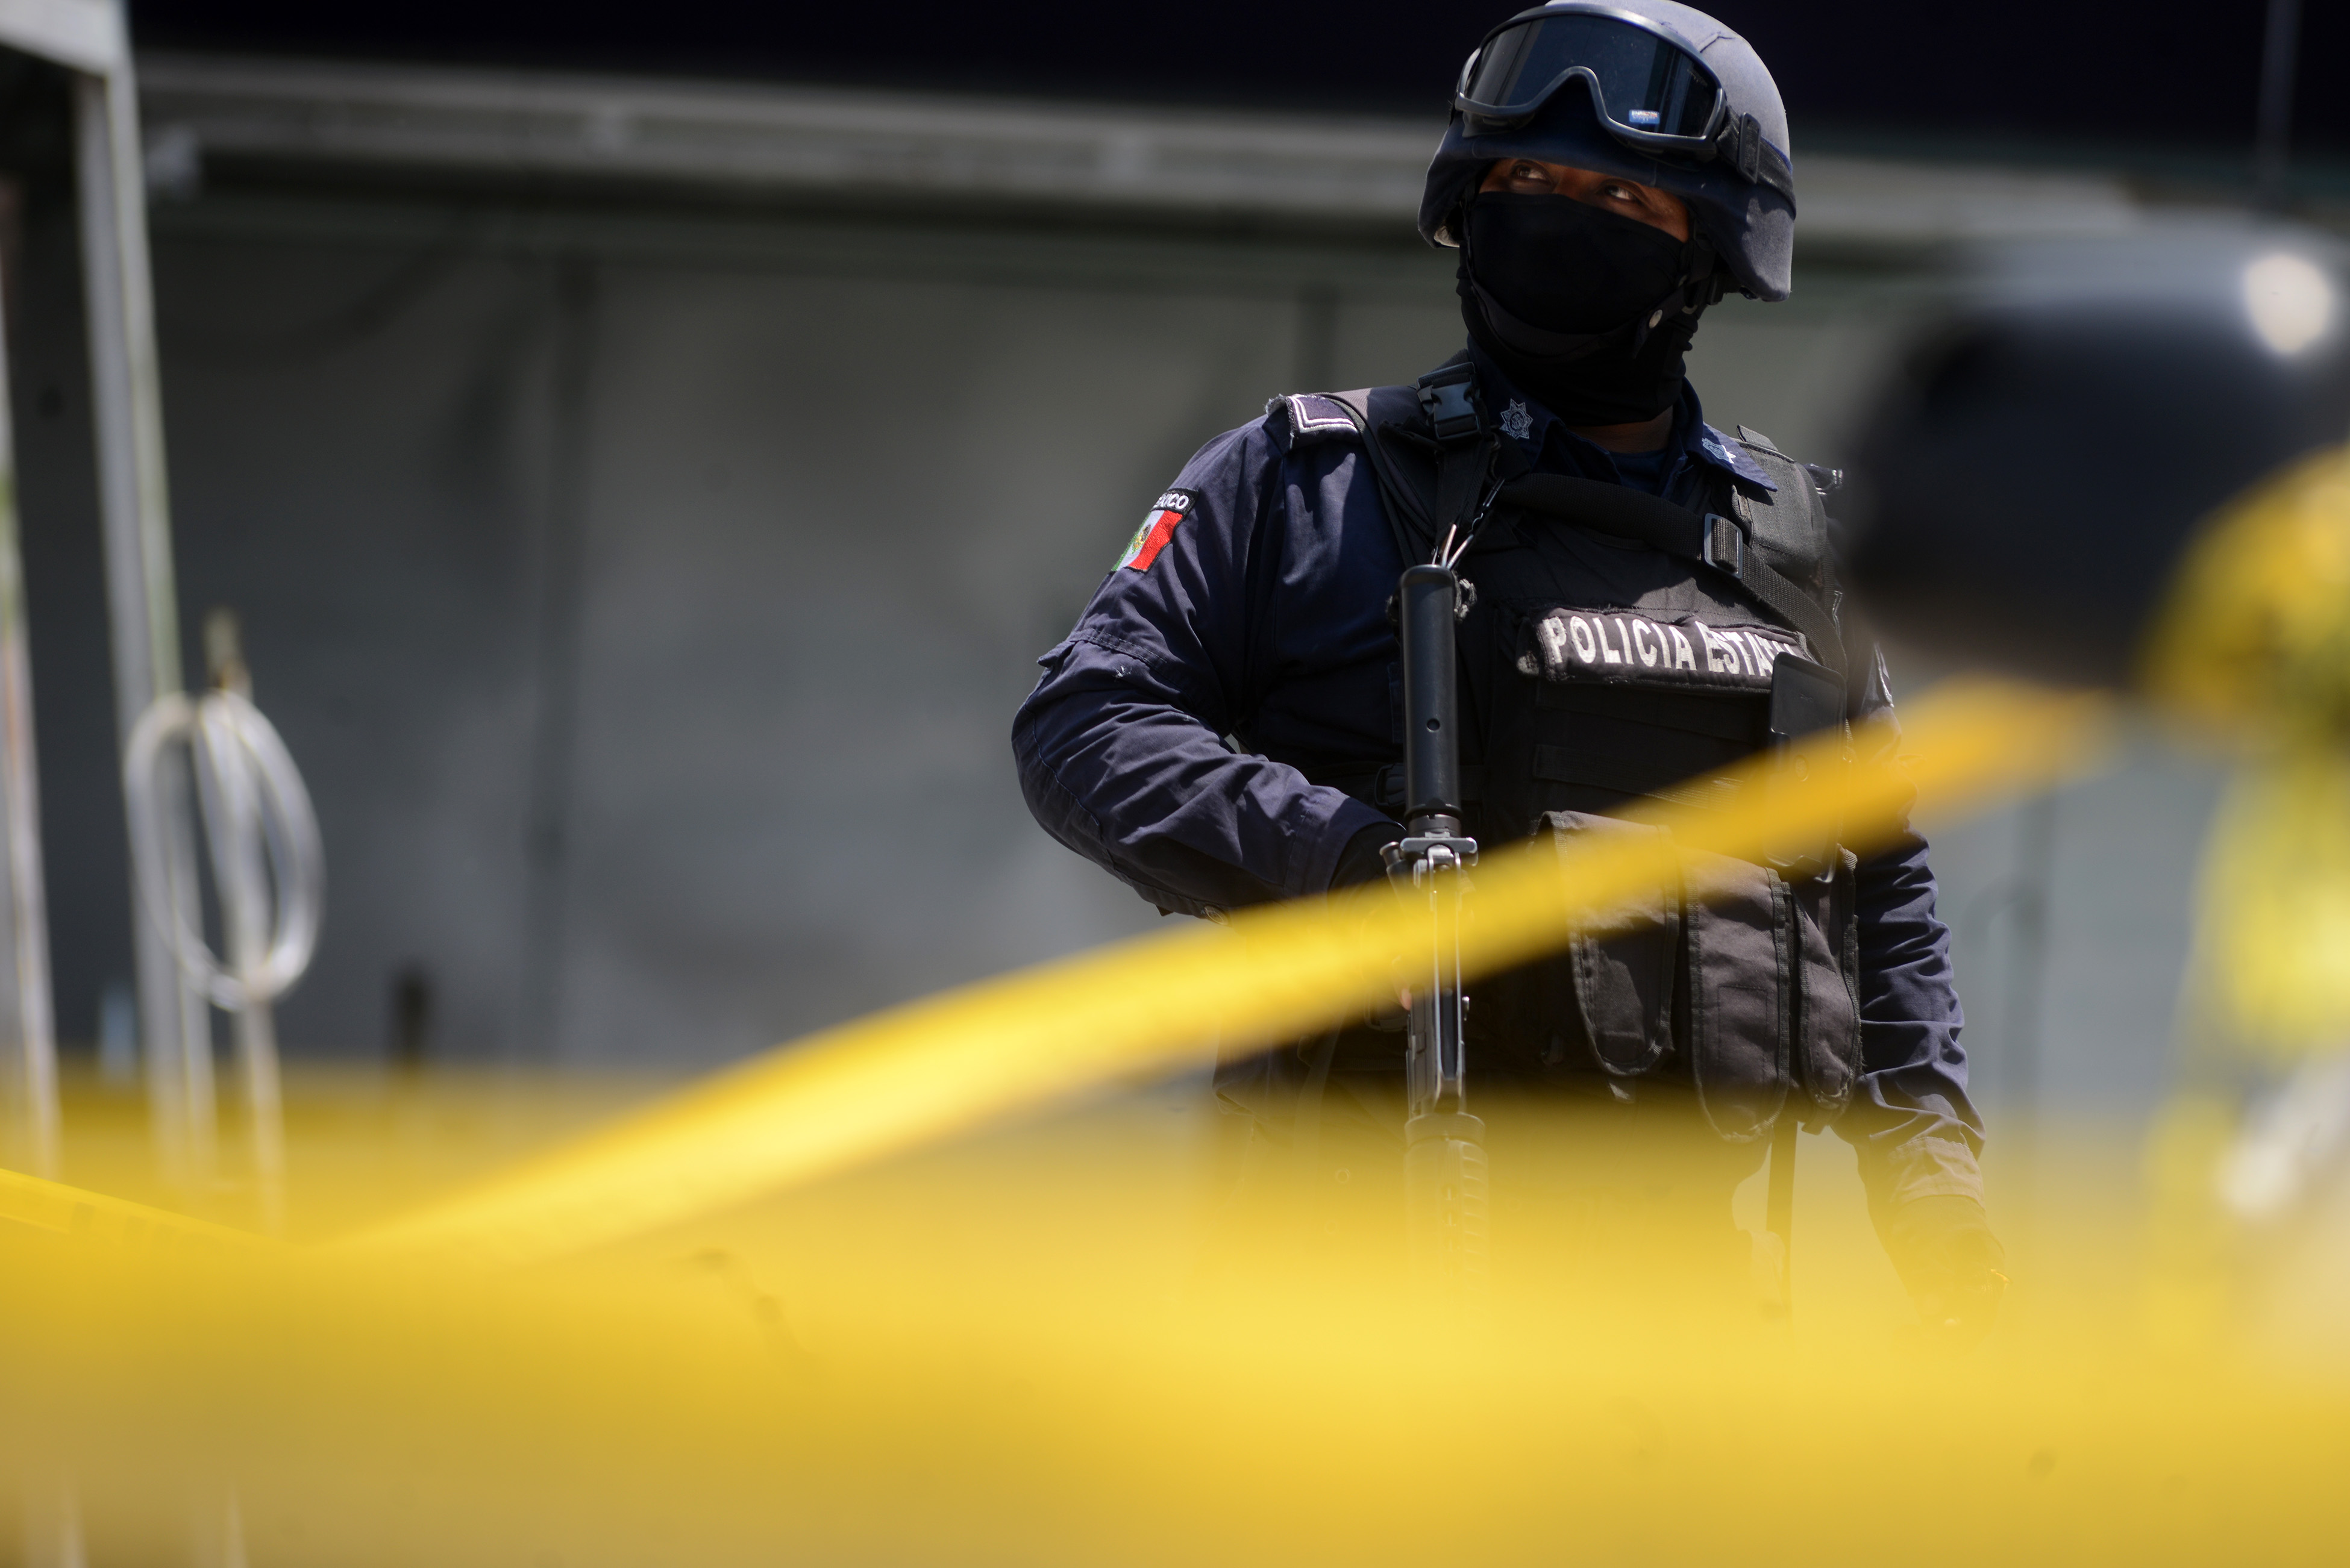  Fin de semana violento deja 16 muertos en Veracruz